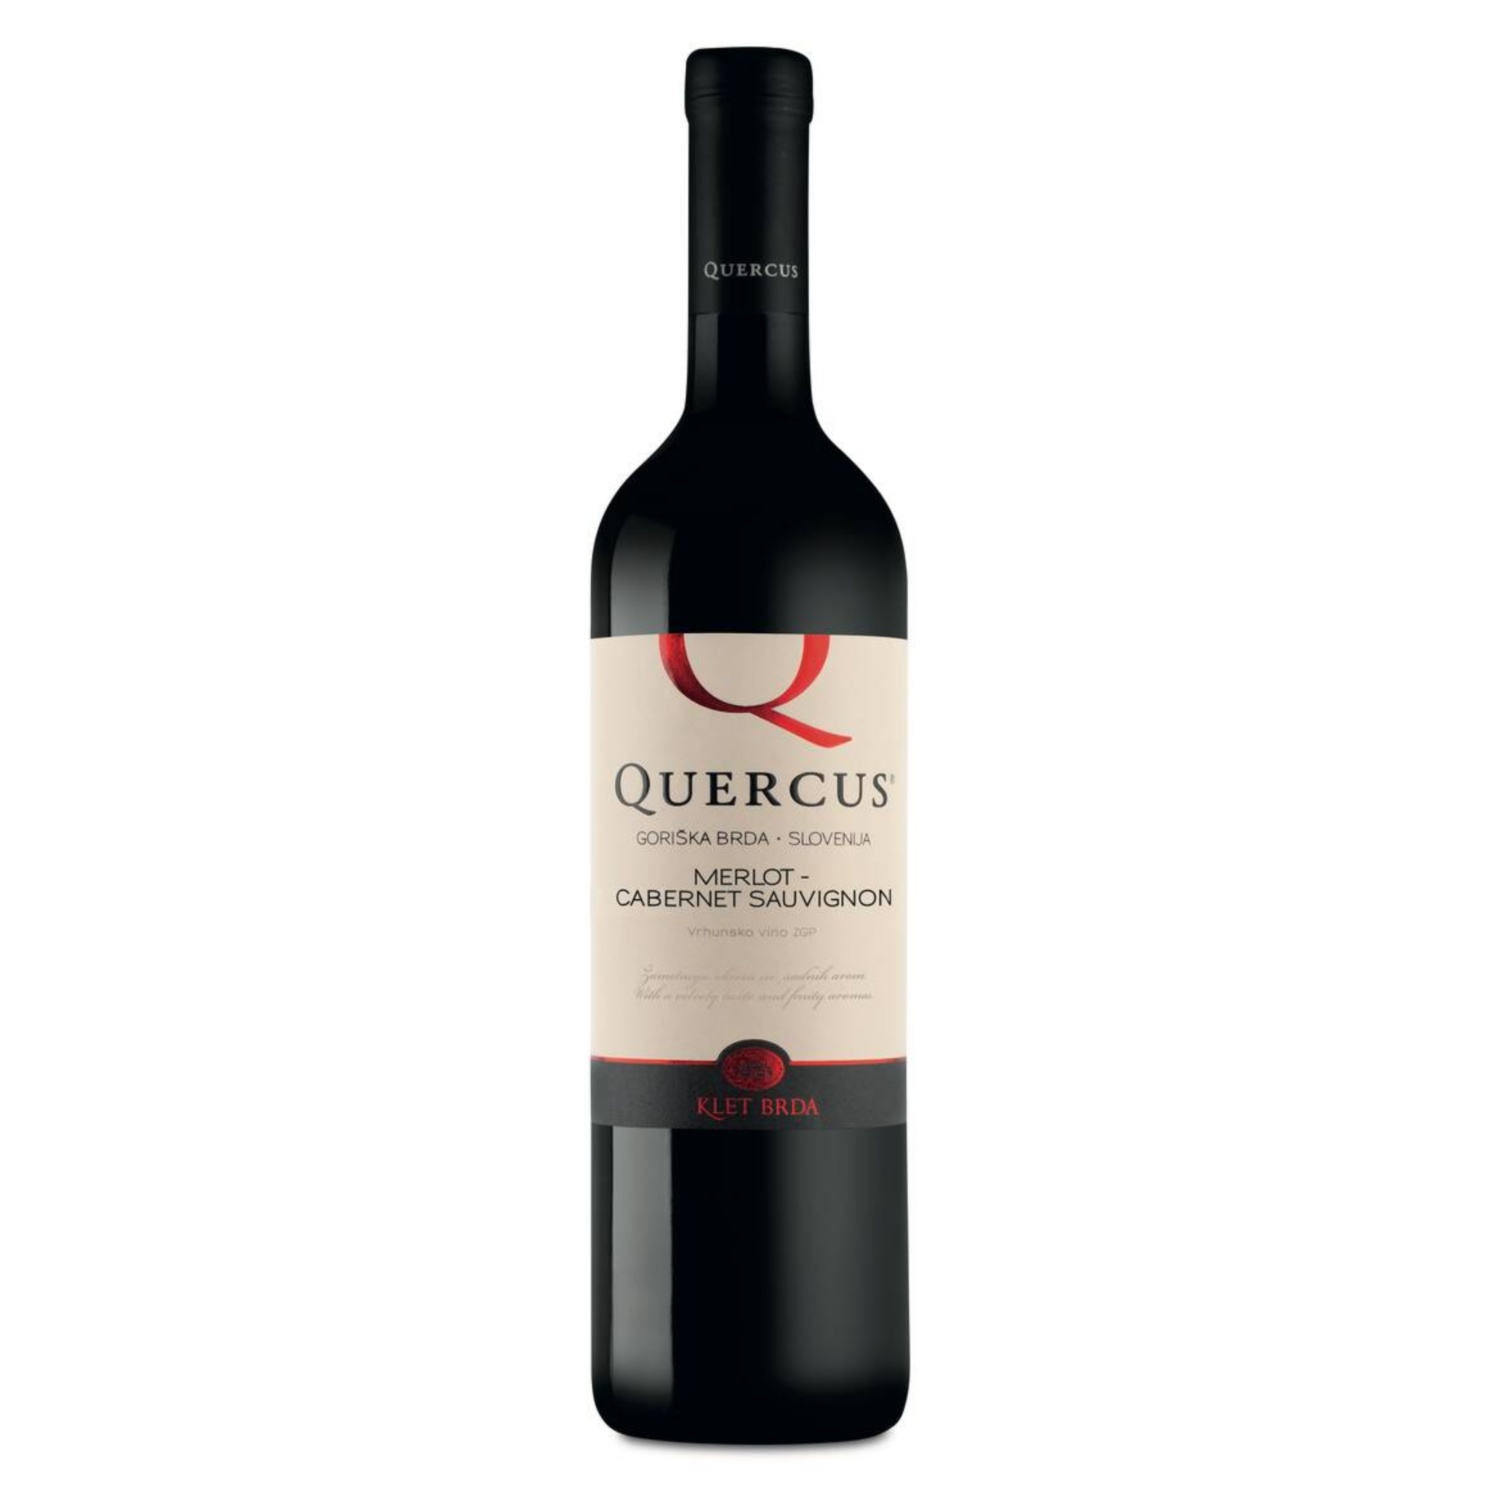 QUERCUS Merlot-cabernet sauvignon